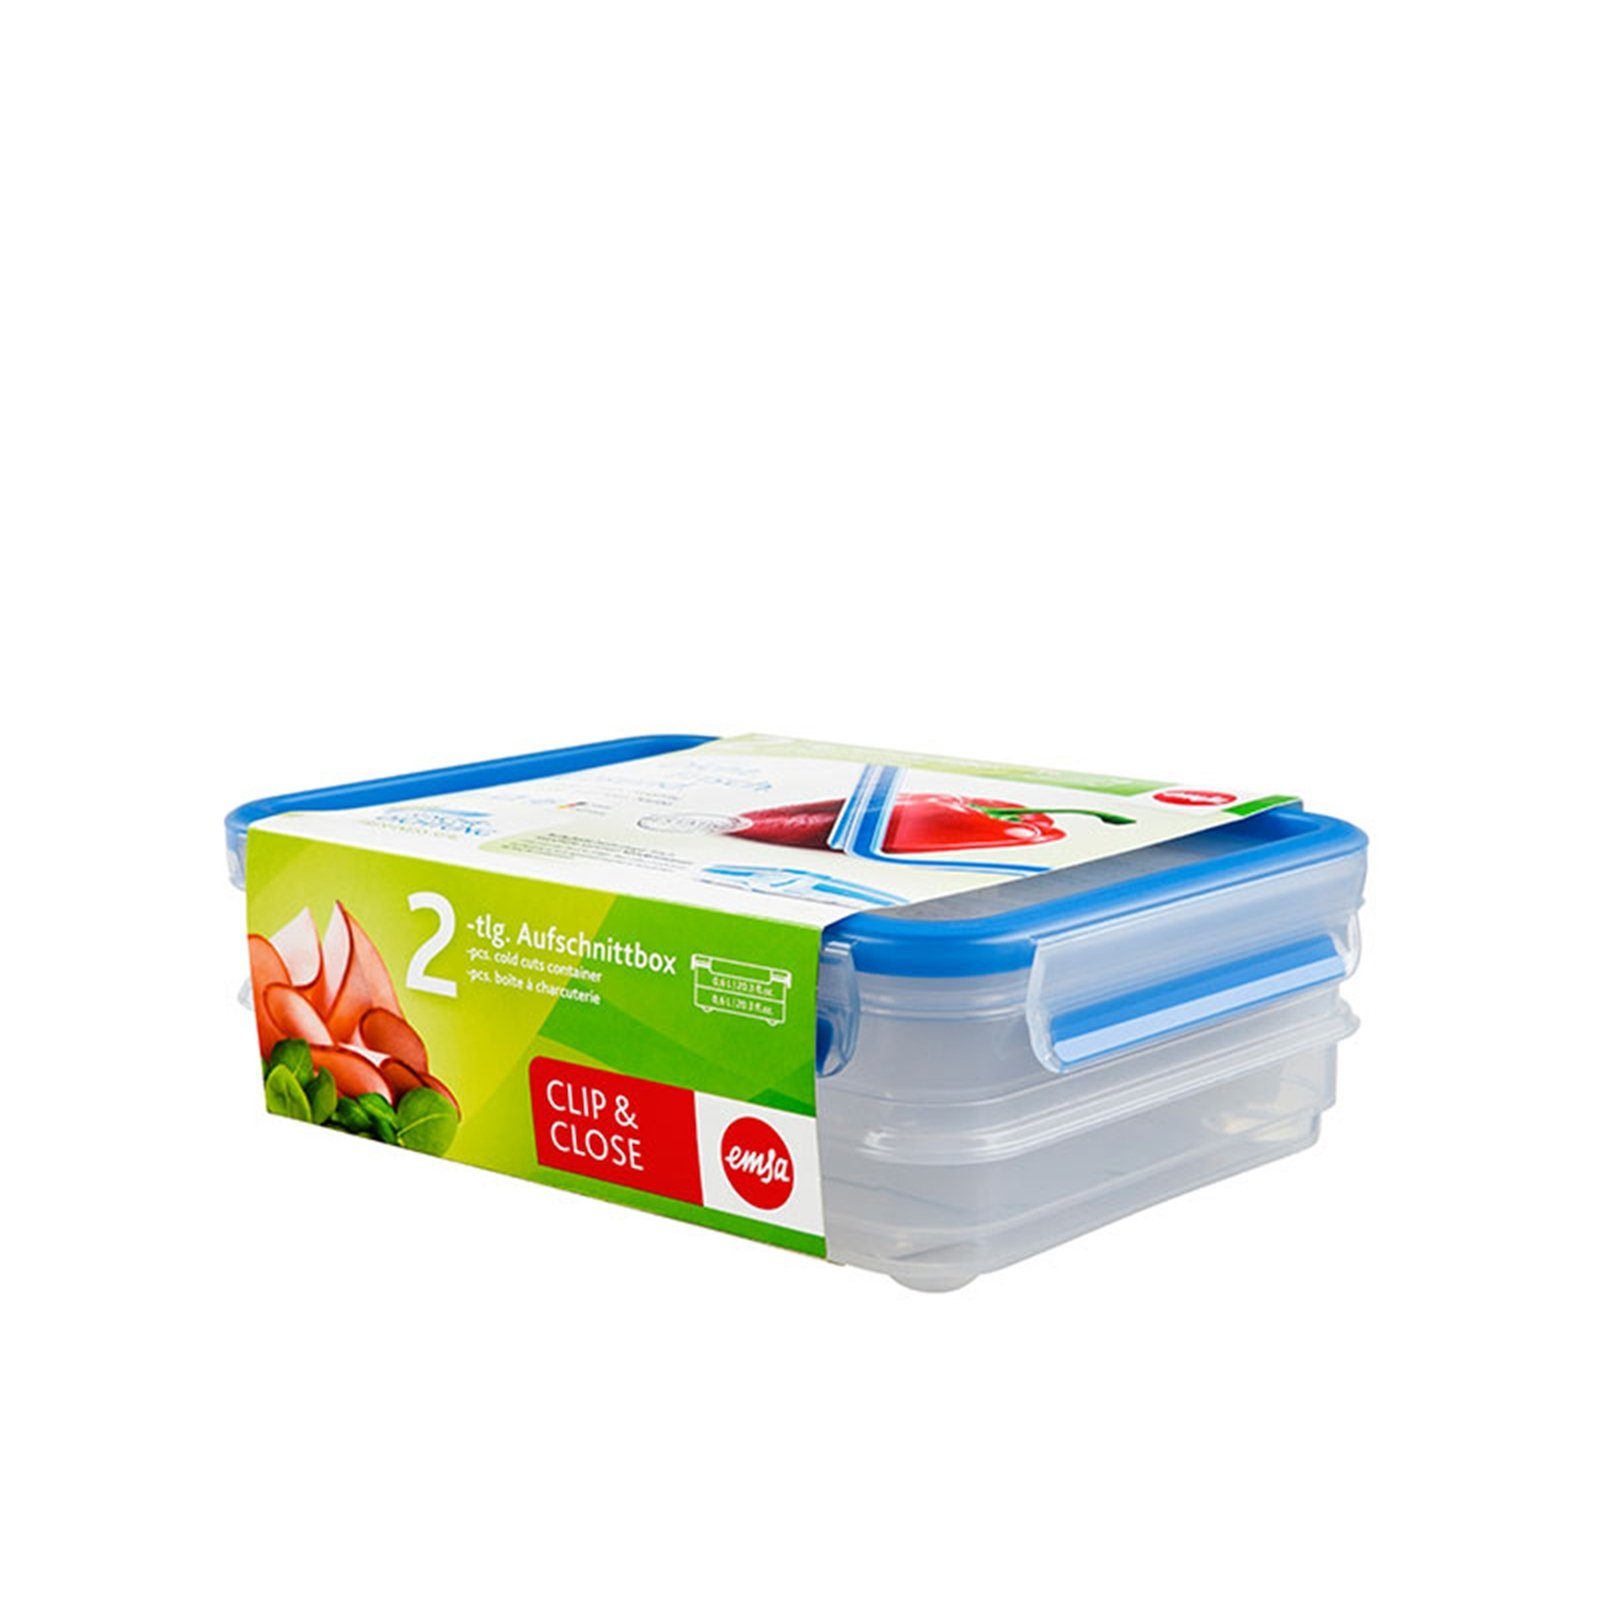 2x Frischhaltedose Aufschnittbox 0,6 Liter Kunststoff Close, Emsa Clip